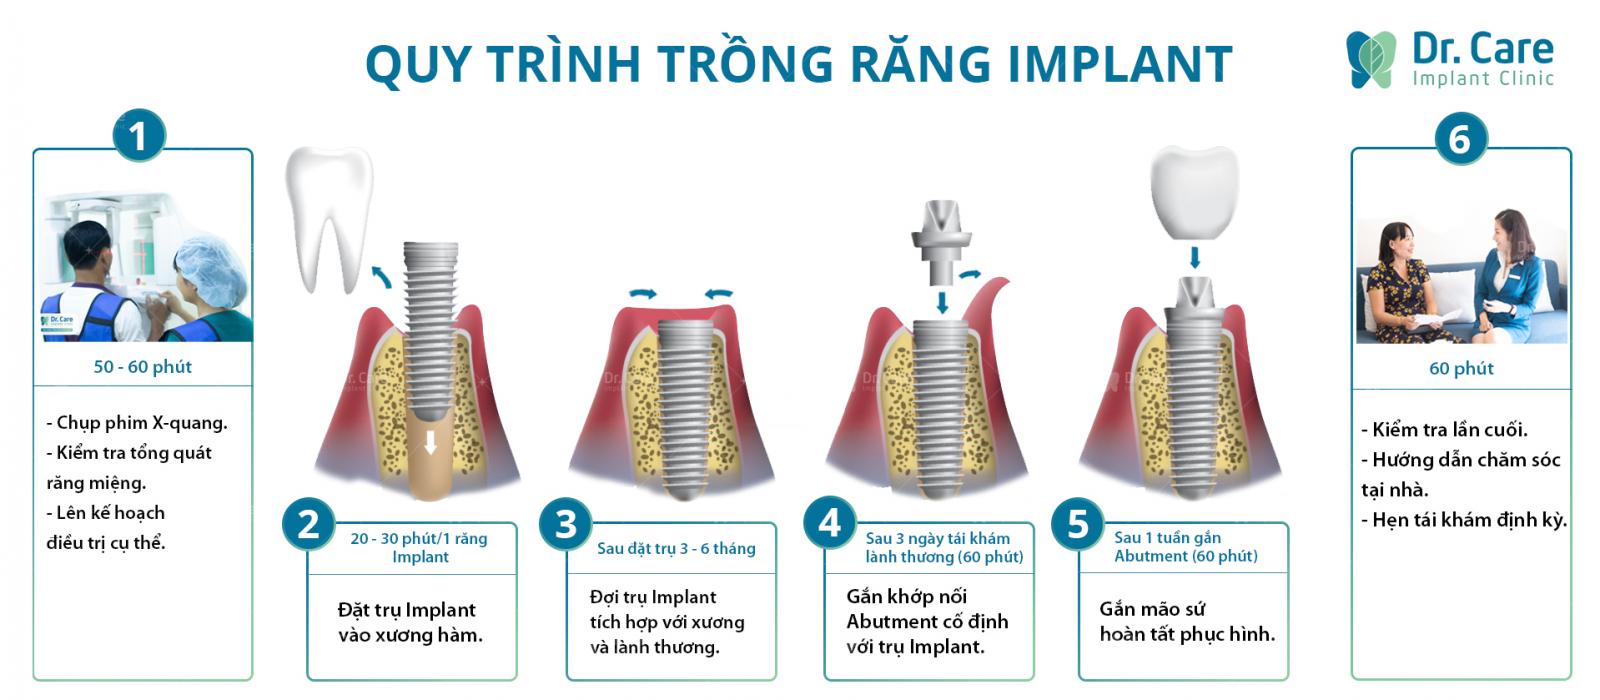 Quy trình trồng răng Implant chất lượng cao tại Nha khoa Dr. Care